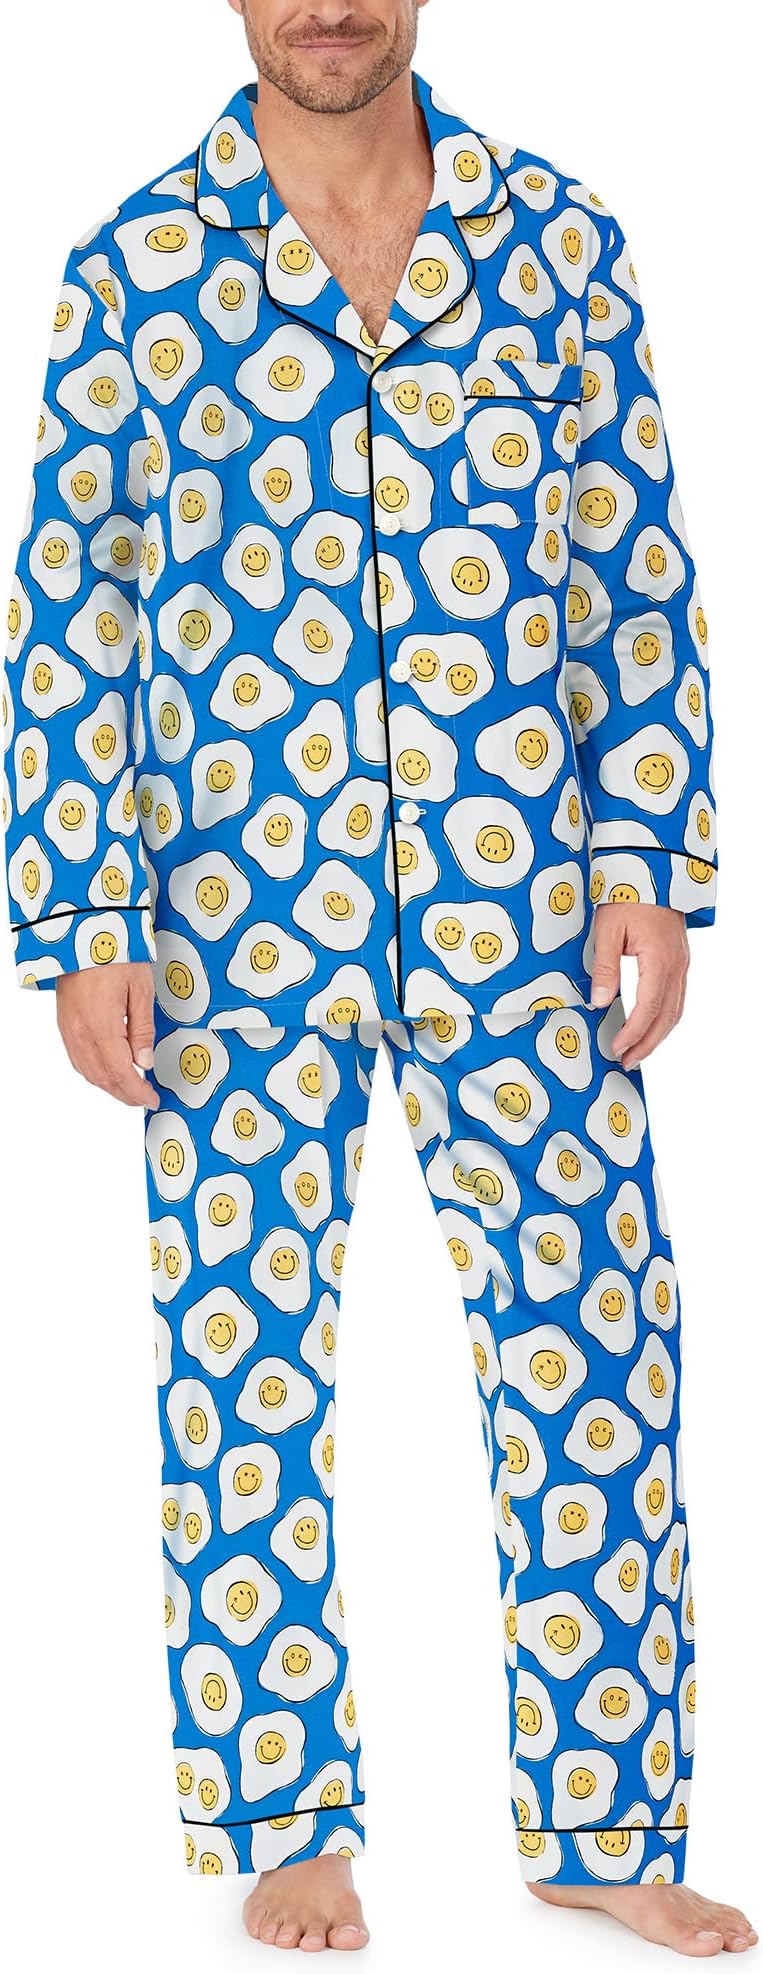 Zappos Print Lab: классический пижамный комплект с длинными рукавами Sunny Side Up Bedhead PJs, цвет Sunny Side Up низкие носки eggs sunny side up low sock с цветной яичницей размер 29 цвет черный